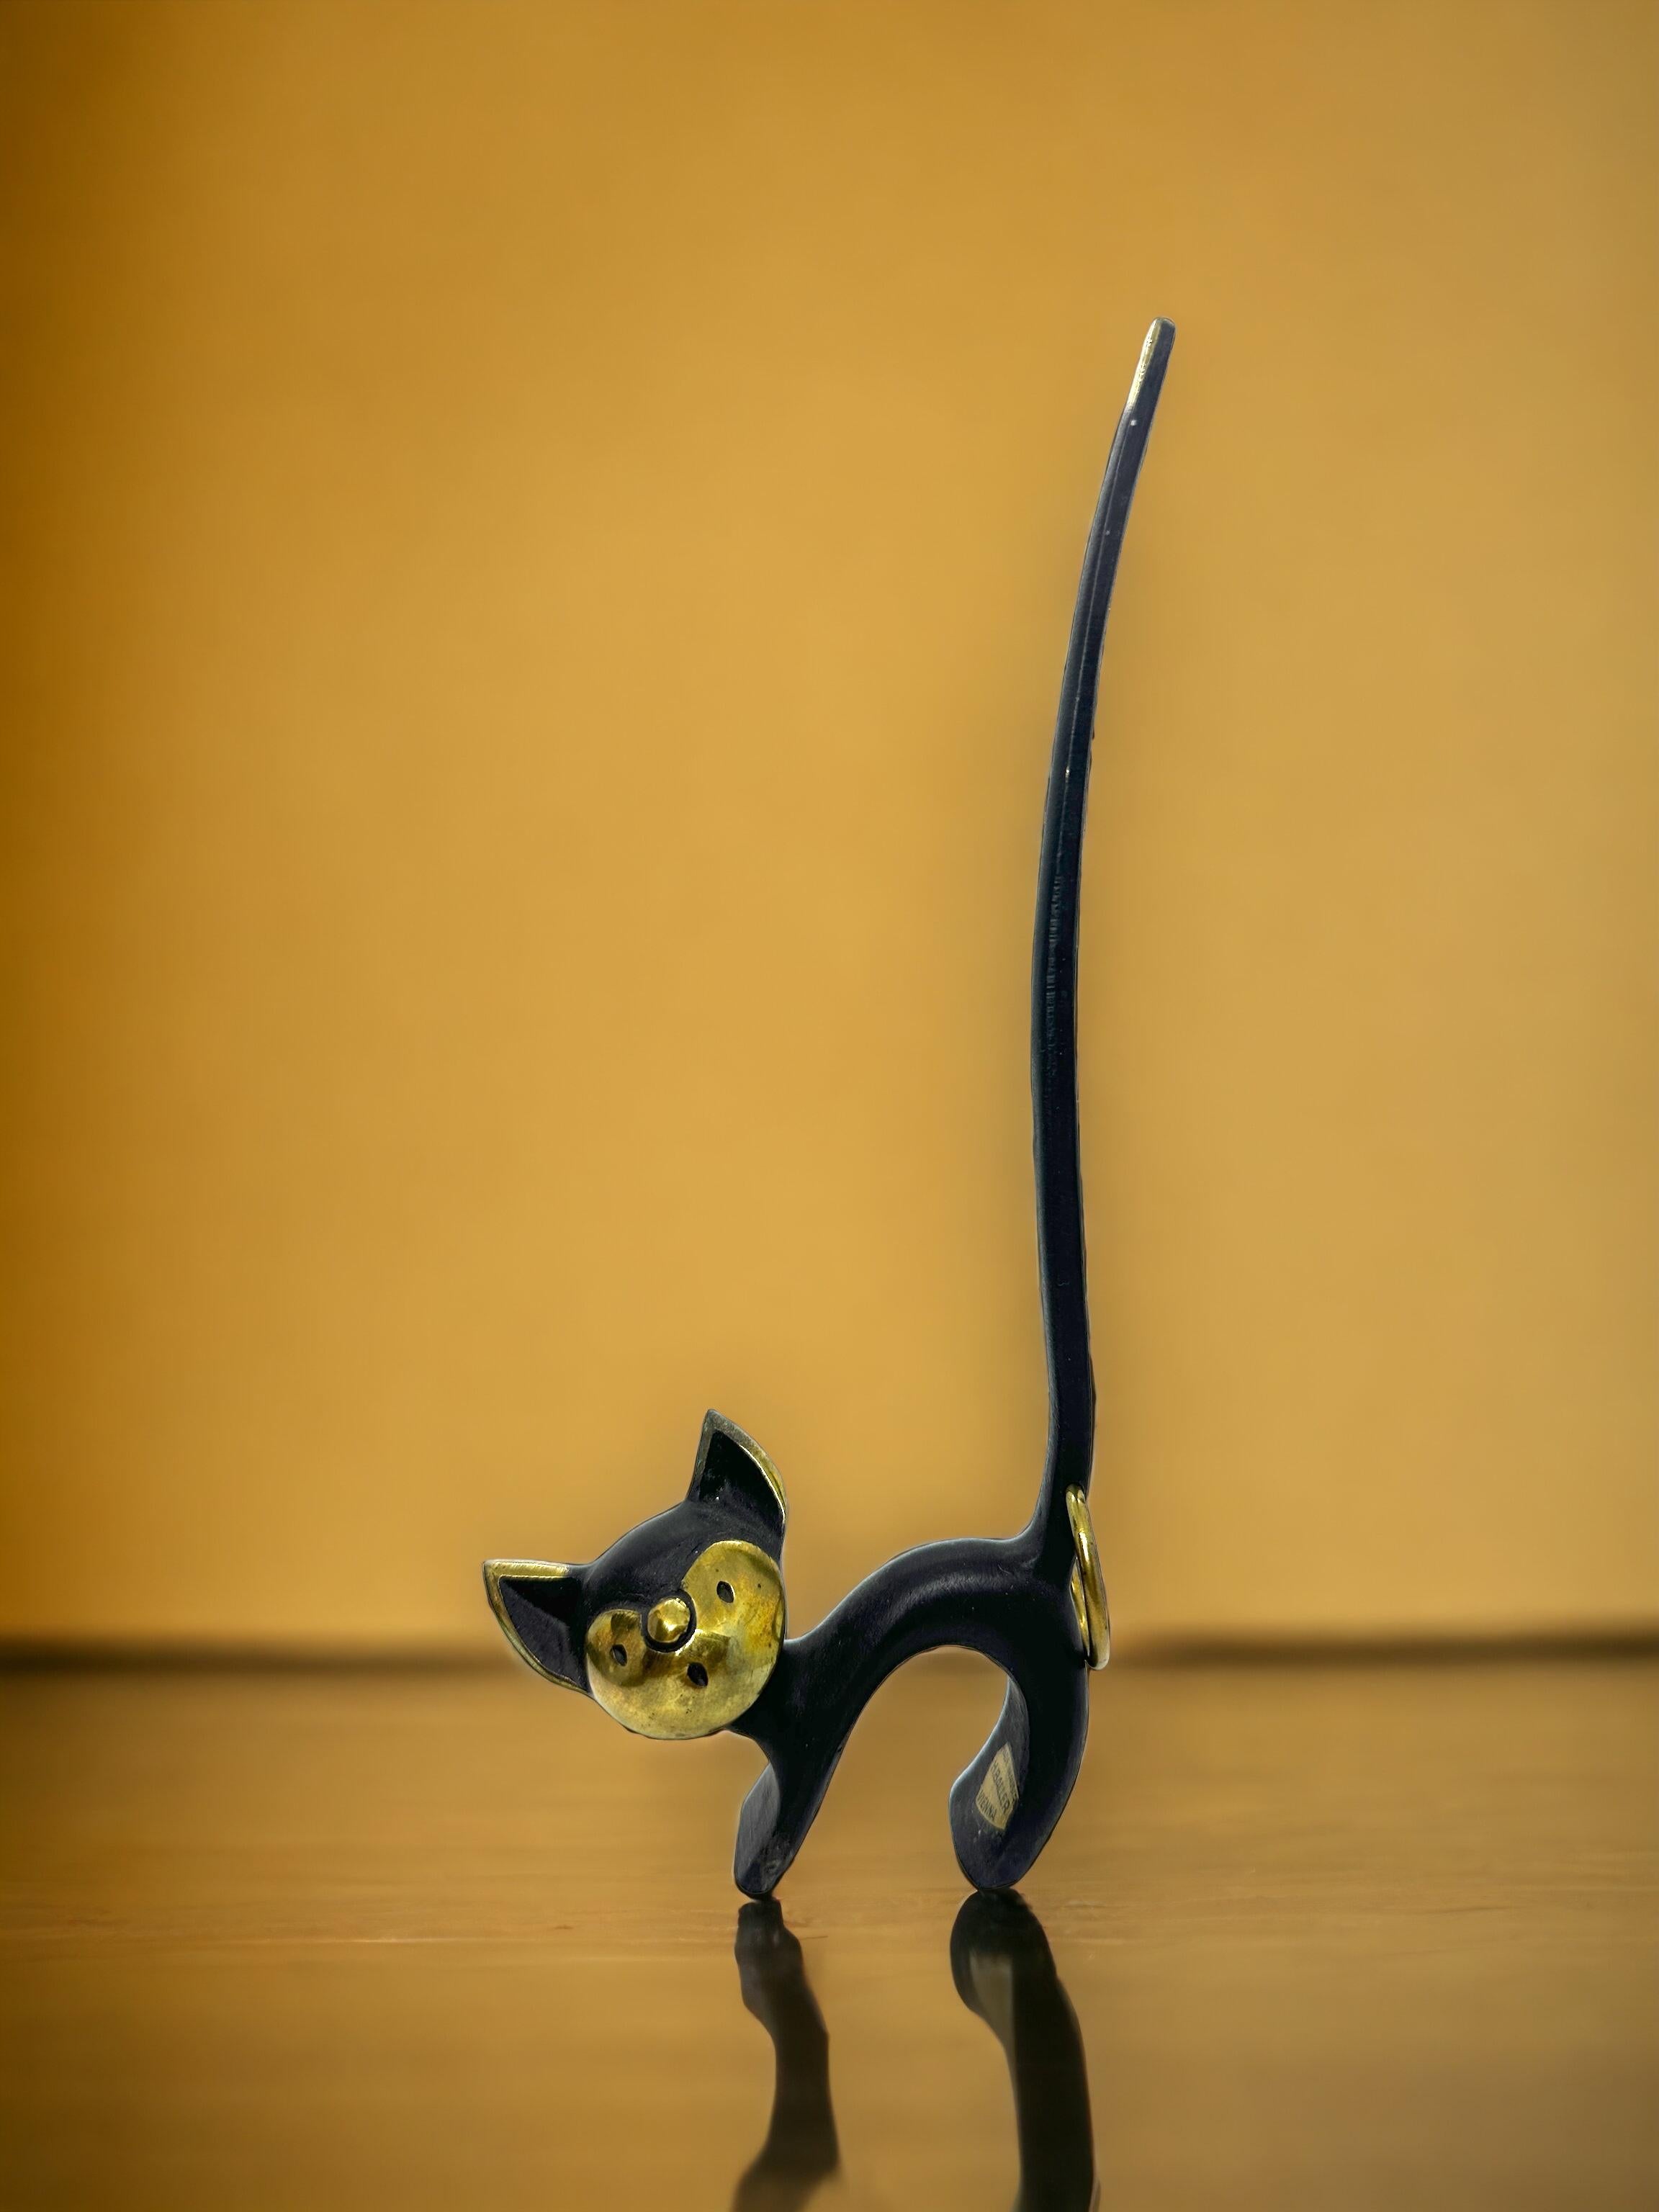 Klassische frühe 1950er Jahre österreichische Bosse Katze Figur Sammlerstück. Eine schöne Ergänzung für Ihr Zimmer oder einfach für Ihre Sammlung österreichischer Bronzegegenstände. Gefunden bei einem Nachlassverkauf in Wien,